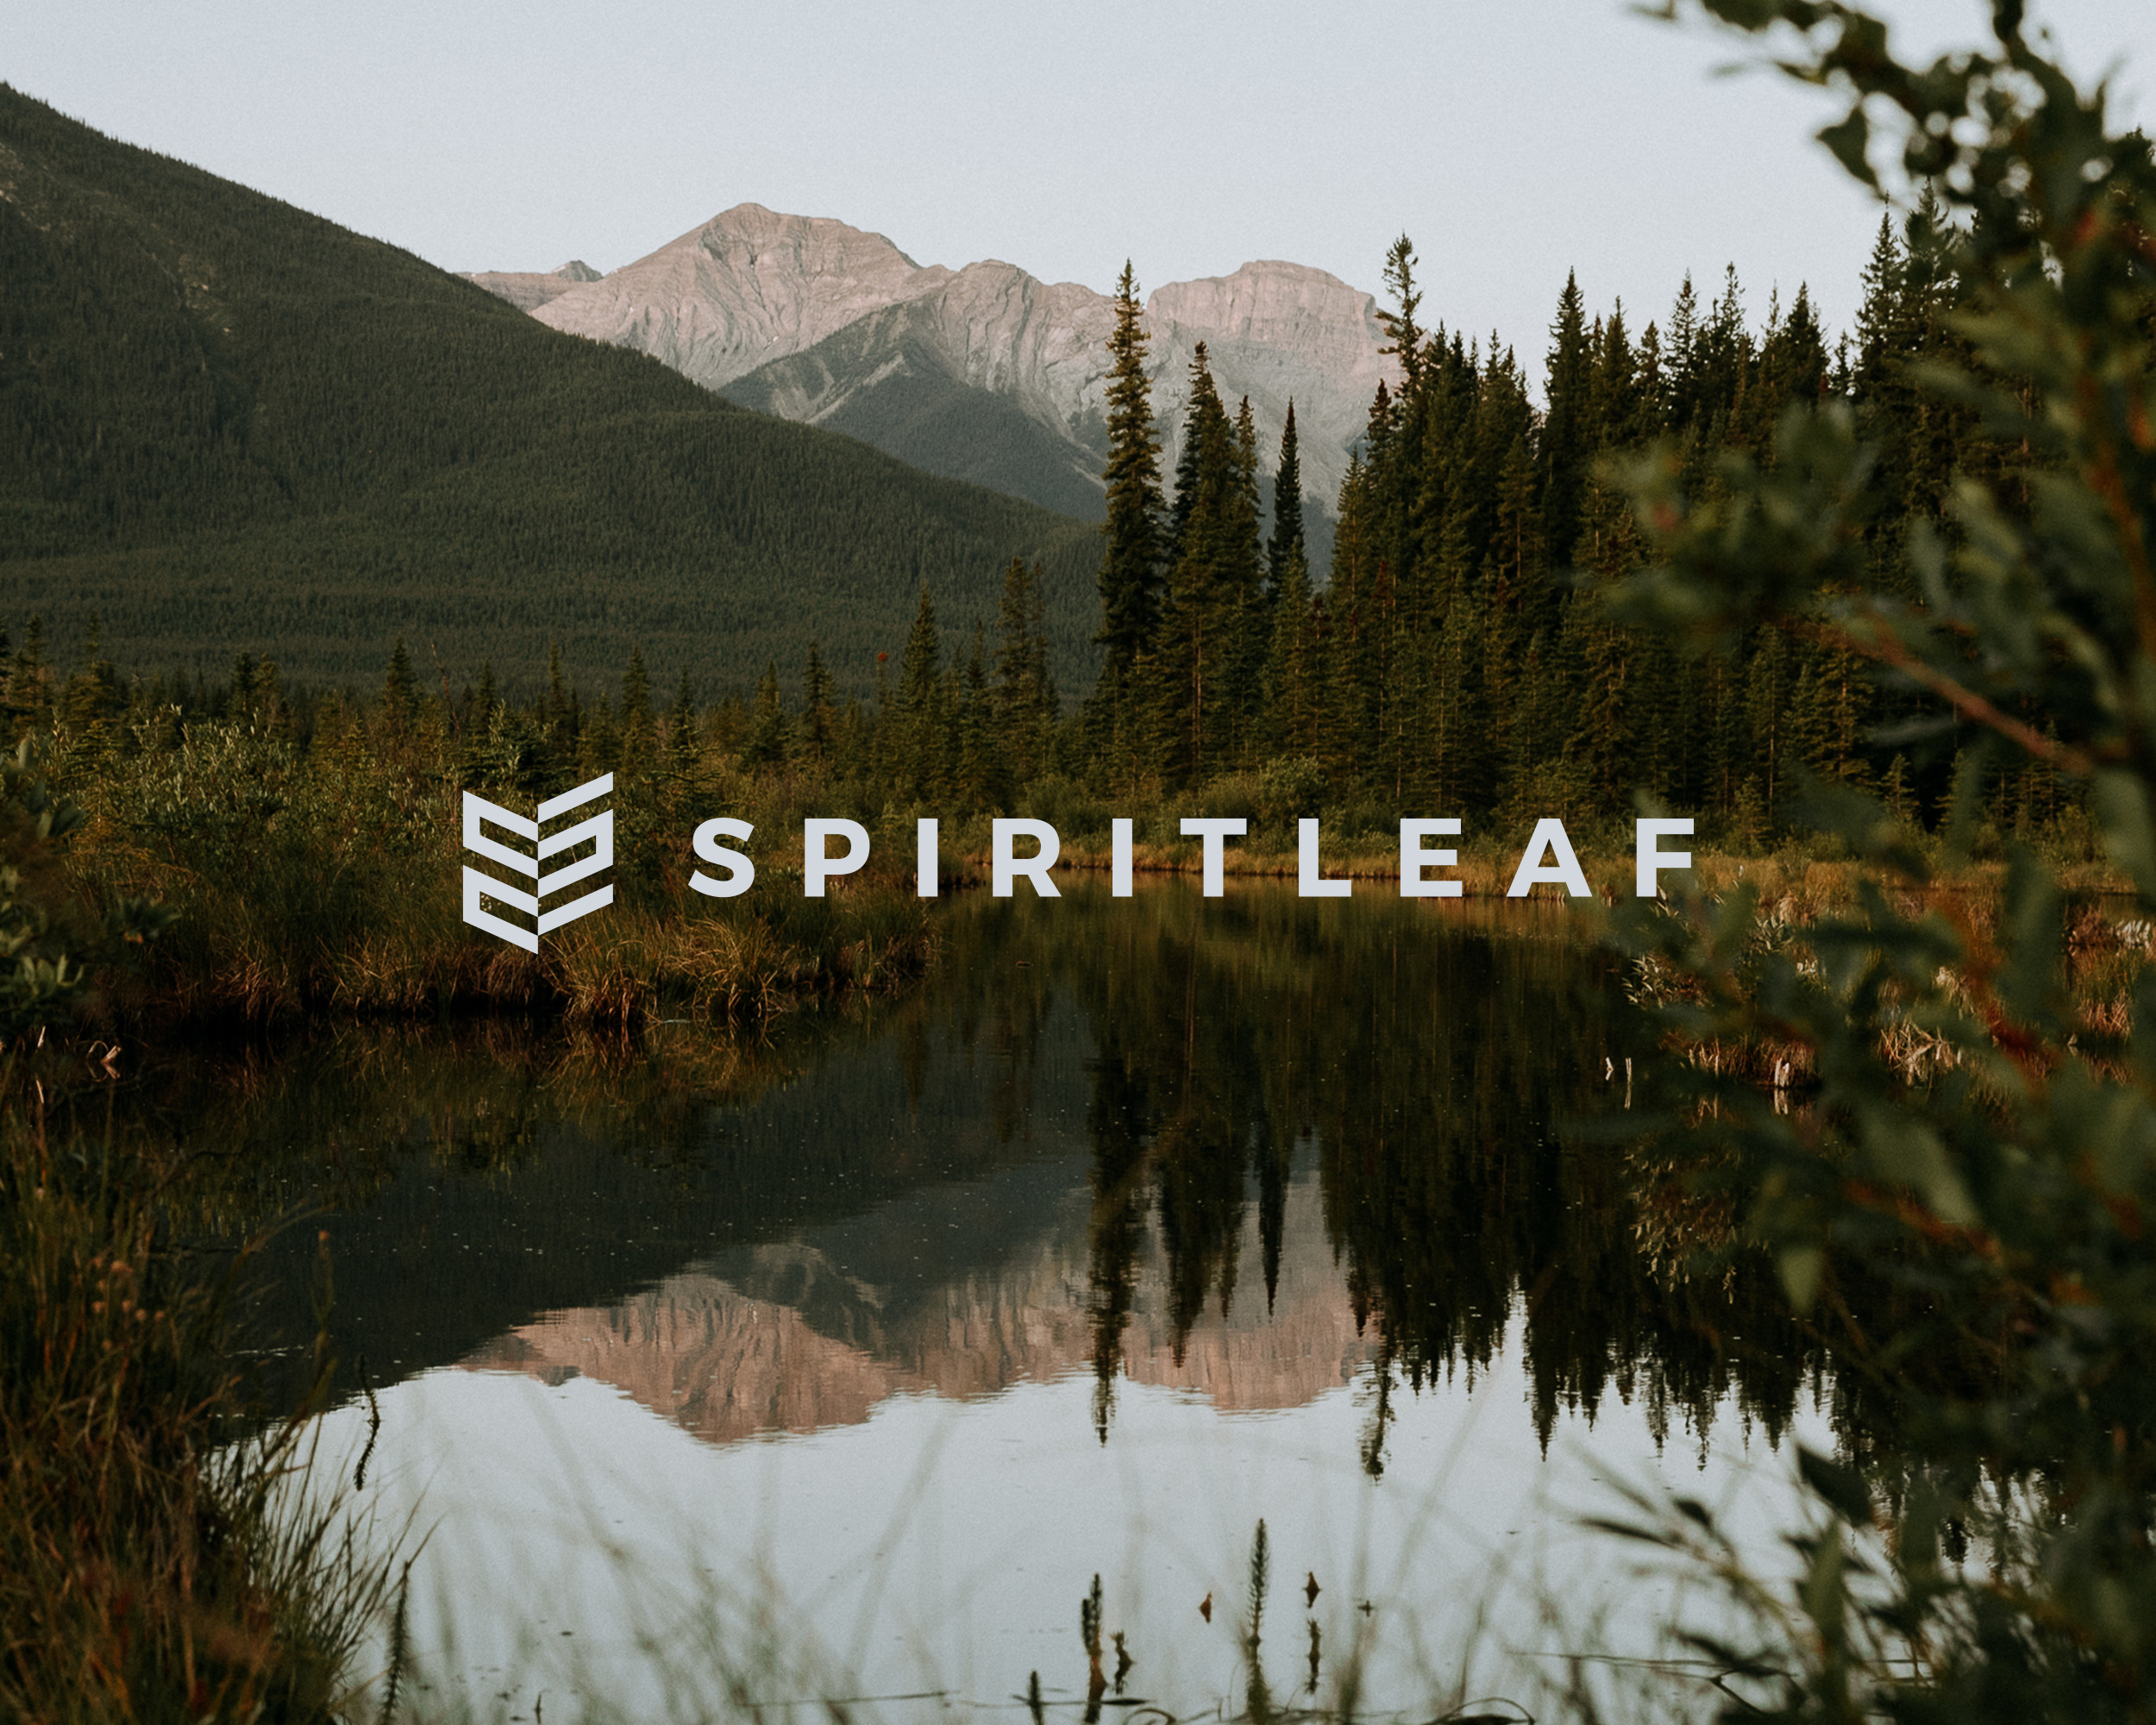 Spiritleaf logo on image of mountains